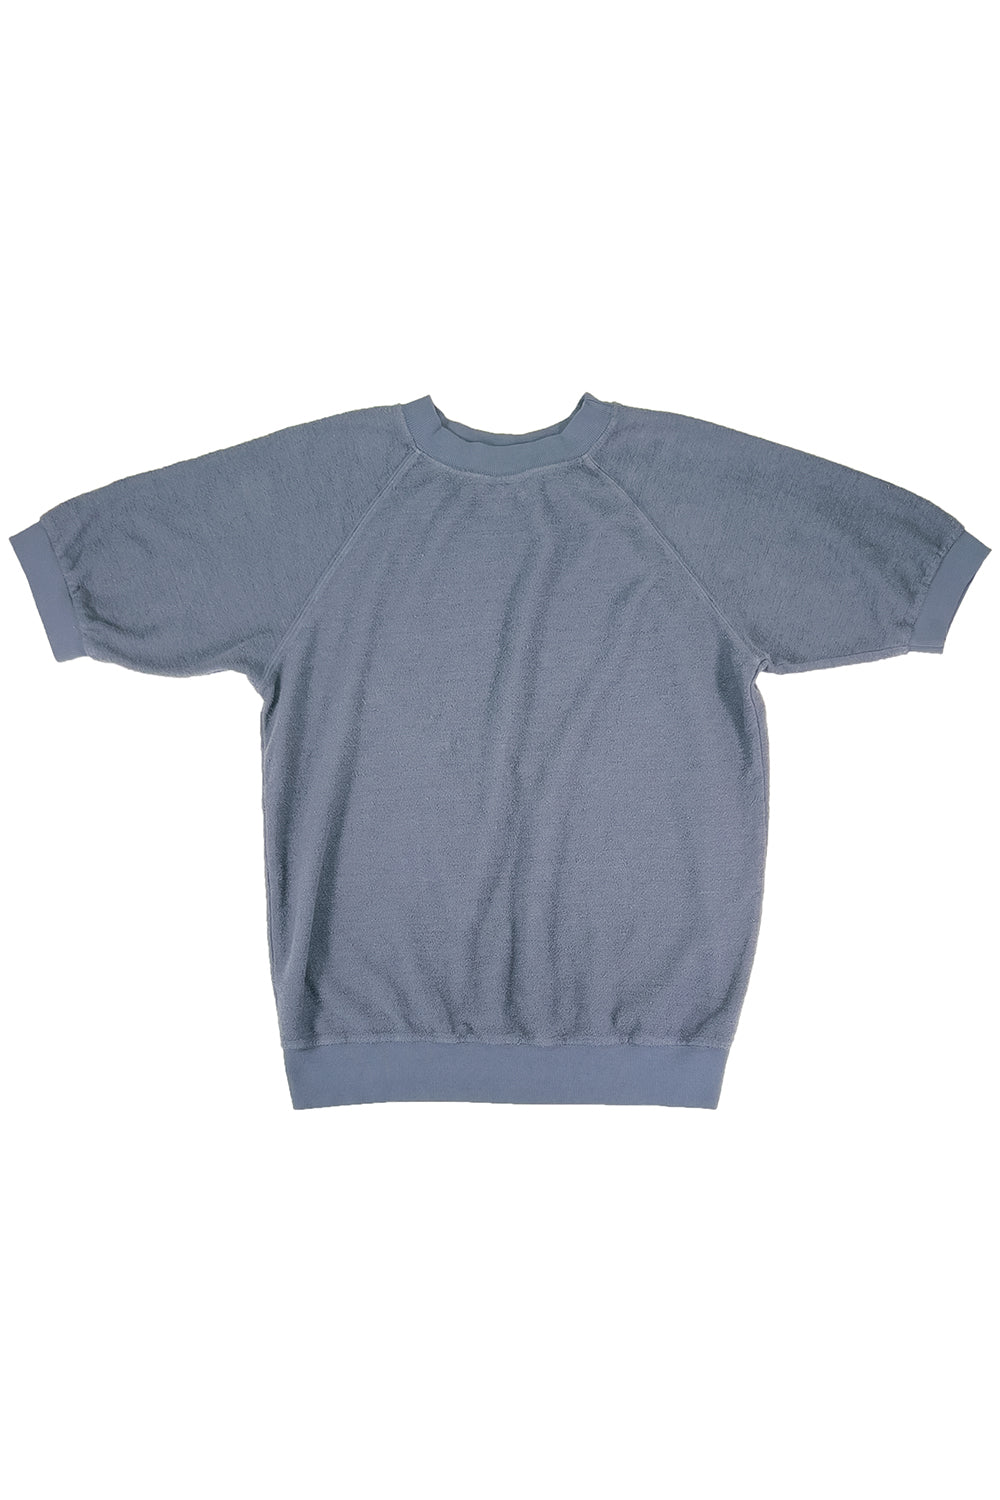 Short Sleeve Raglan Sherpa Sweatshirt | Jungmaven Hemp Clothing & Accessories / Color: Diesel Gray